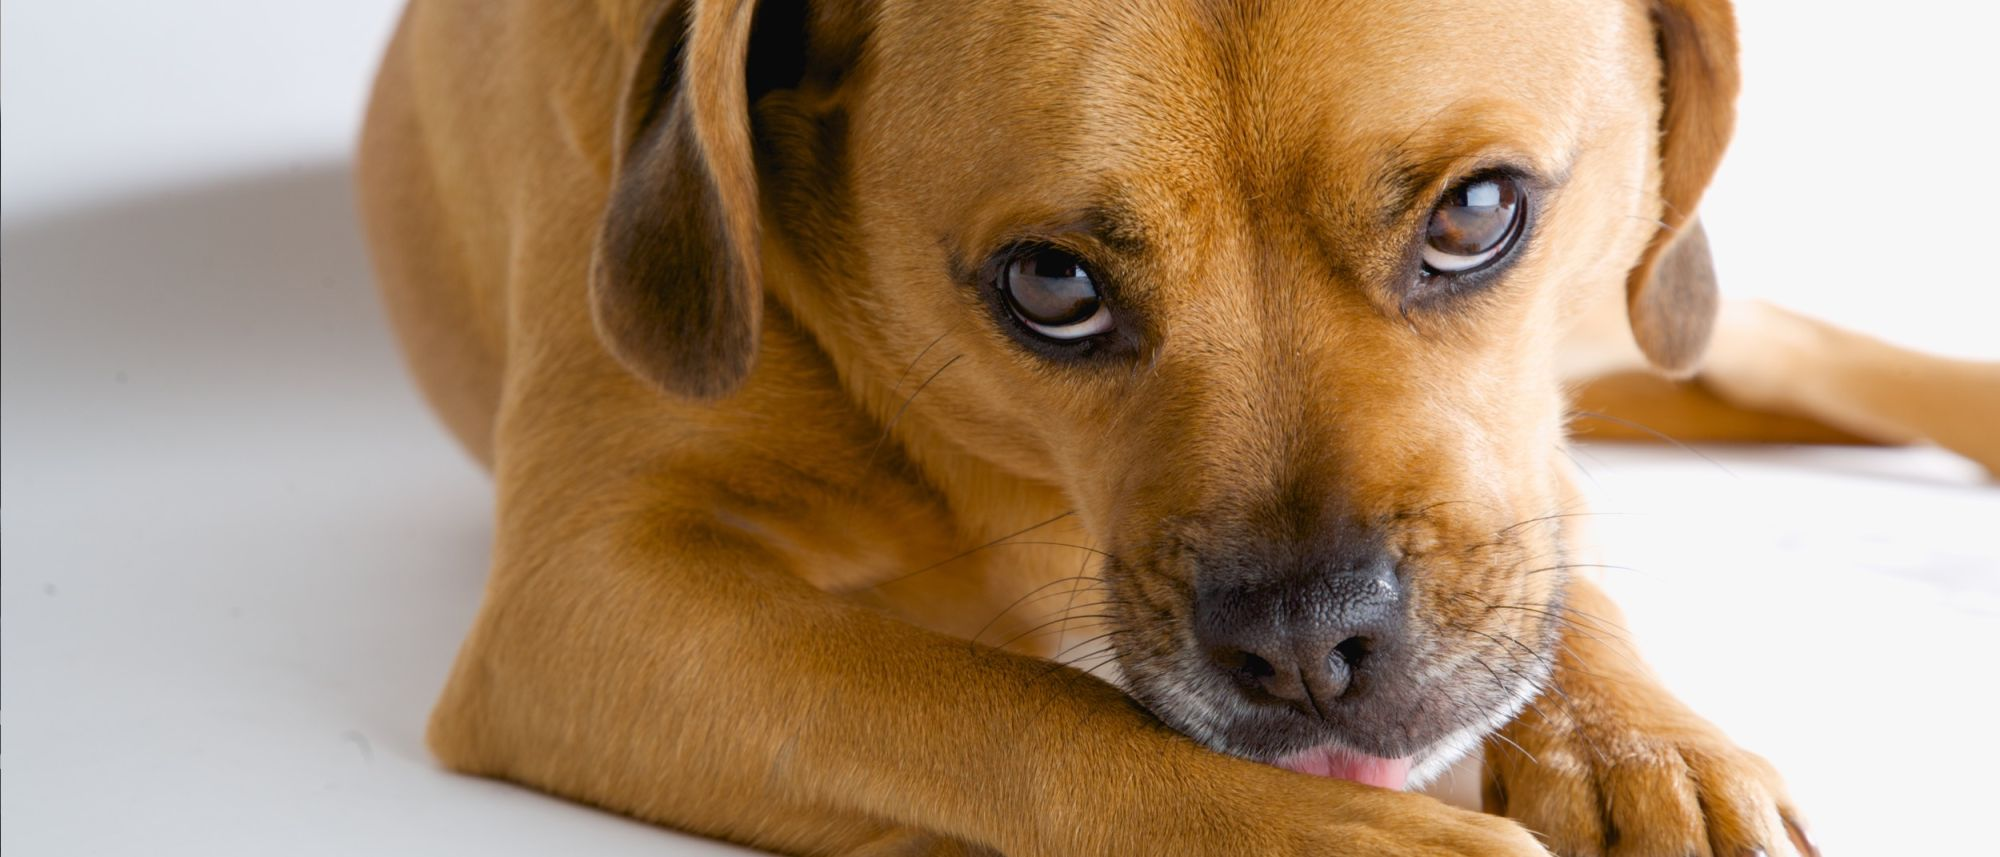 Susceptibles a trigo Noroeste Trastornos compulsivos en perros | Royal Canin